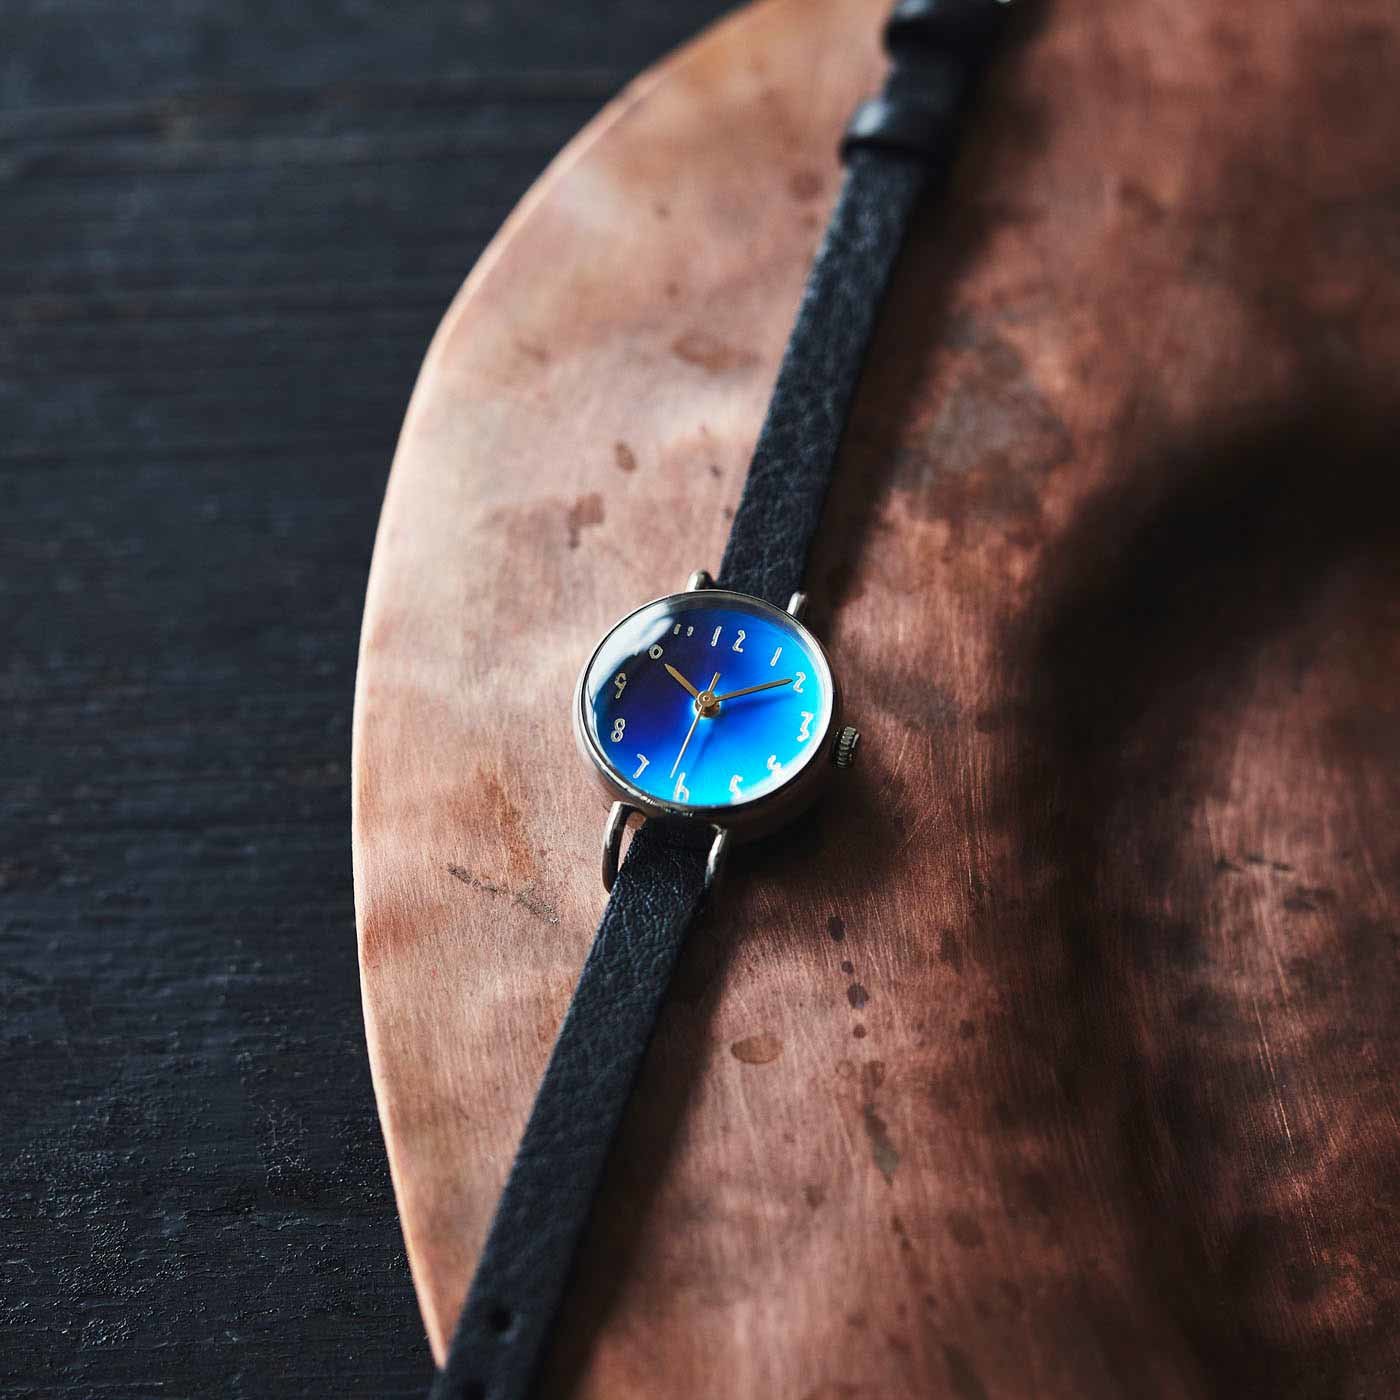 金沢時計職人が手掛けた 藍月に見惚れる腕時計〈墨色〉